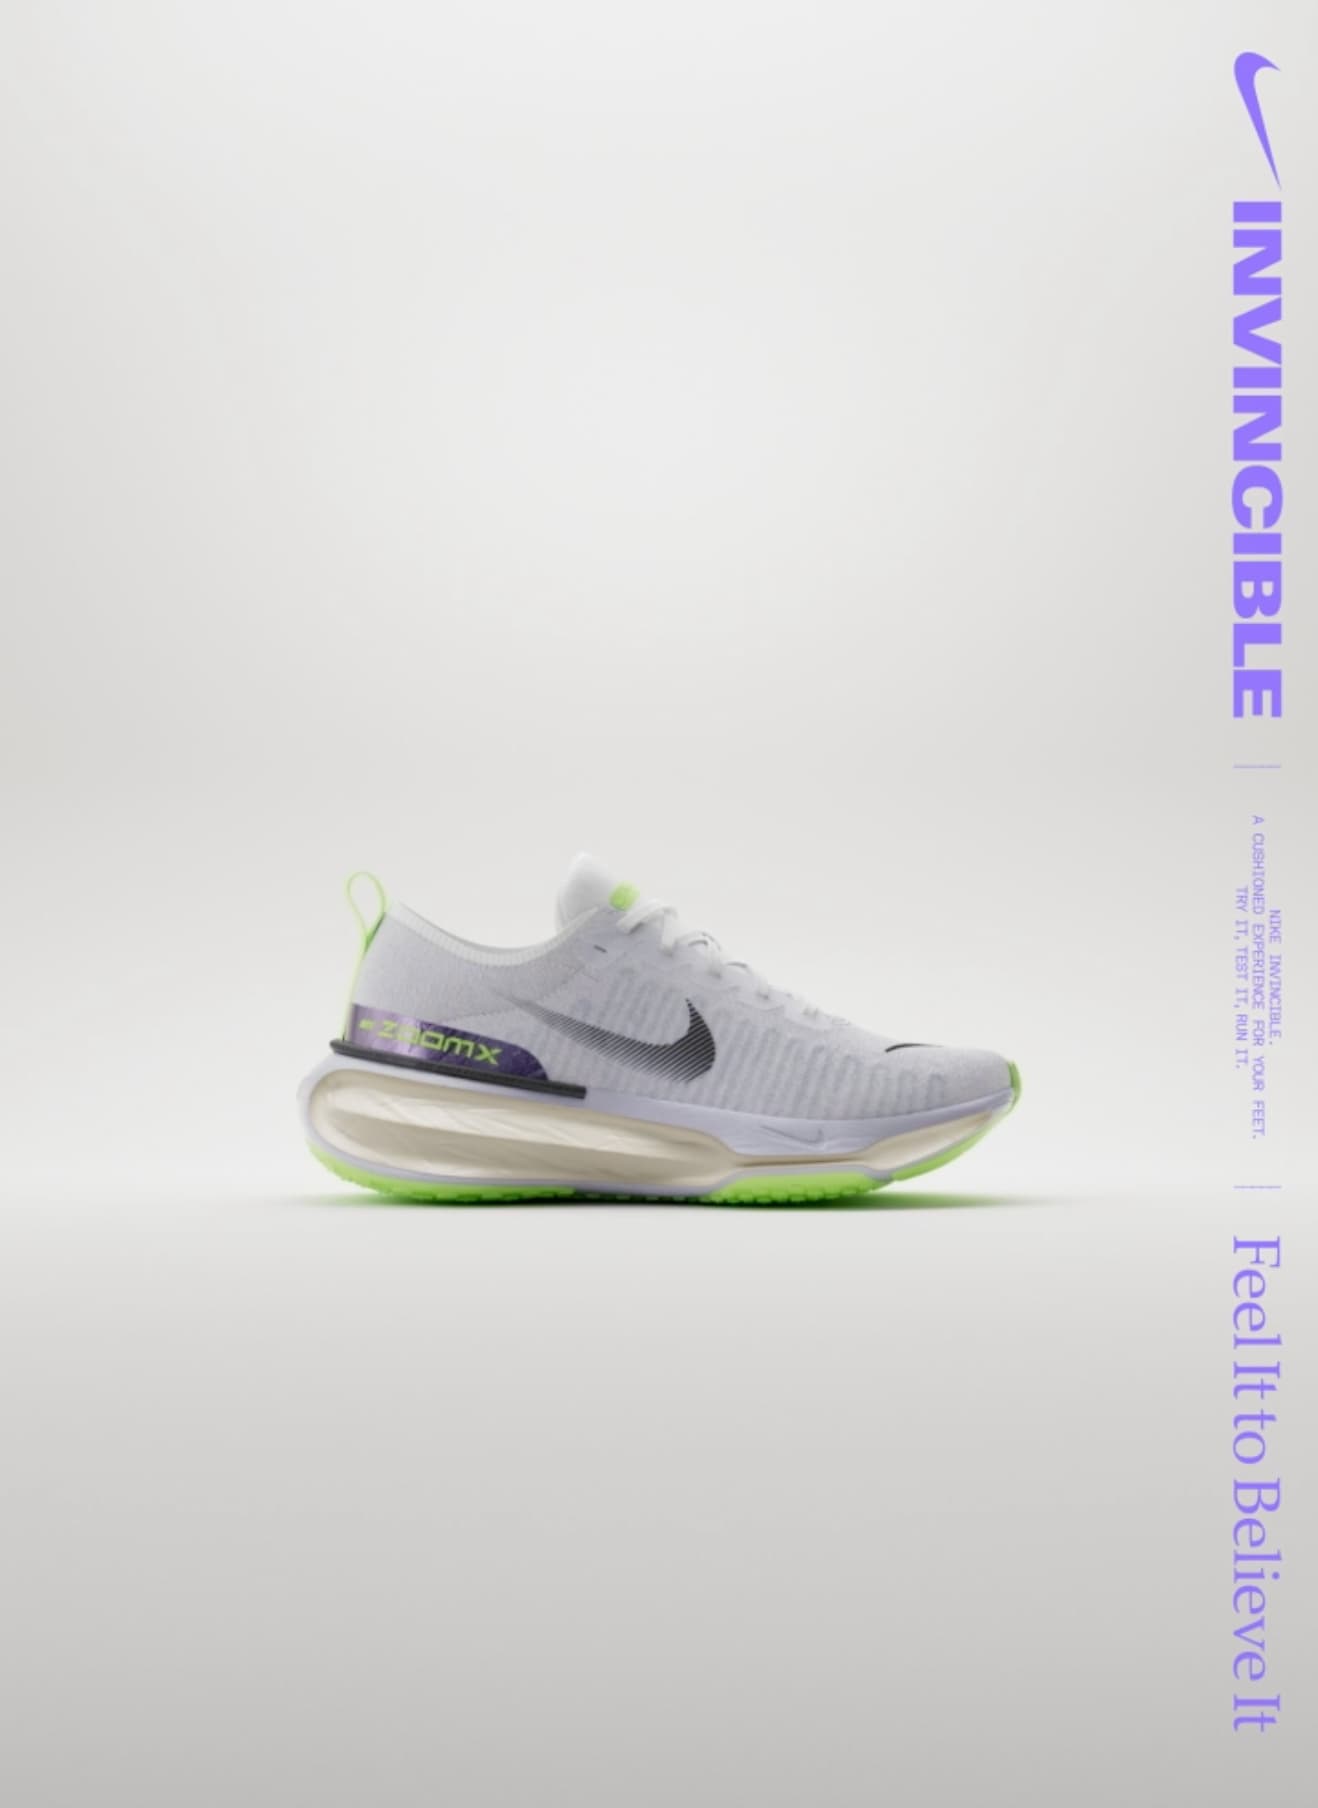 Site de Nike. ES